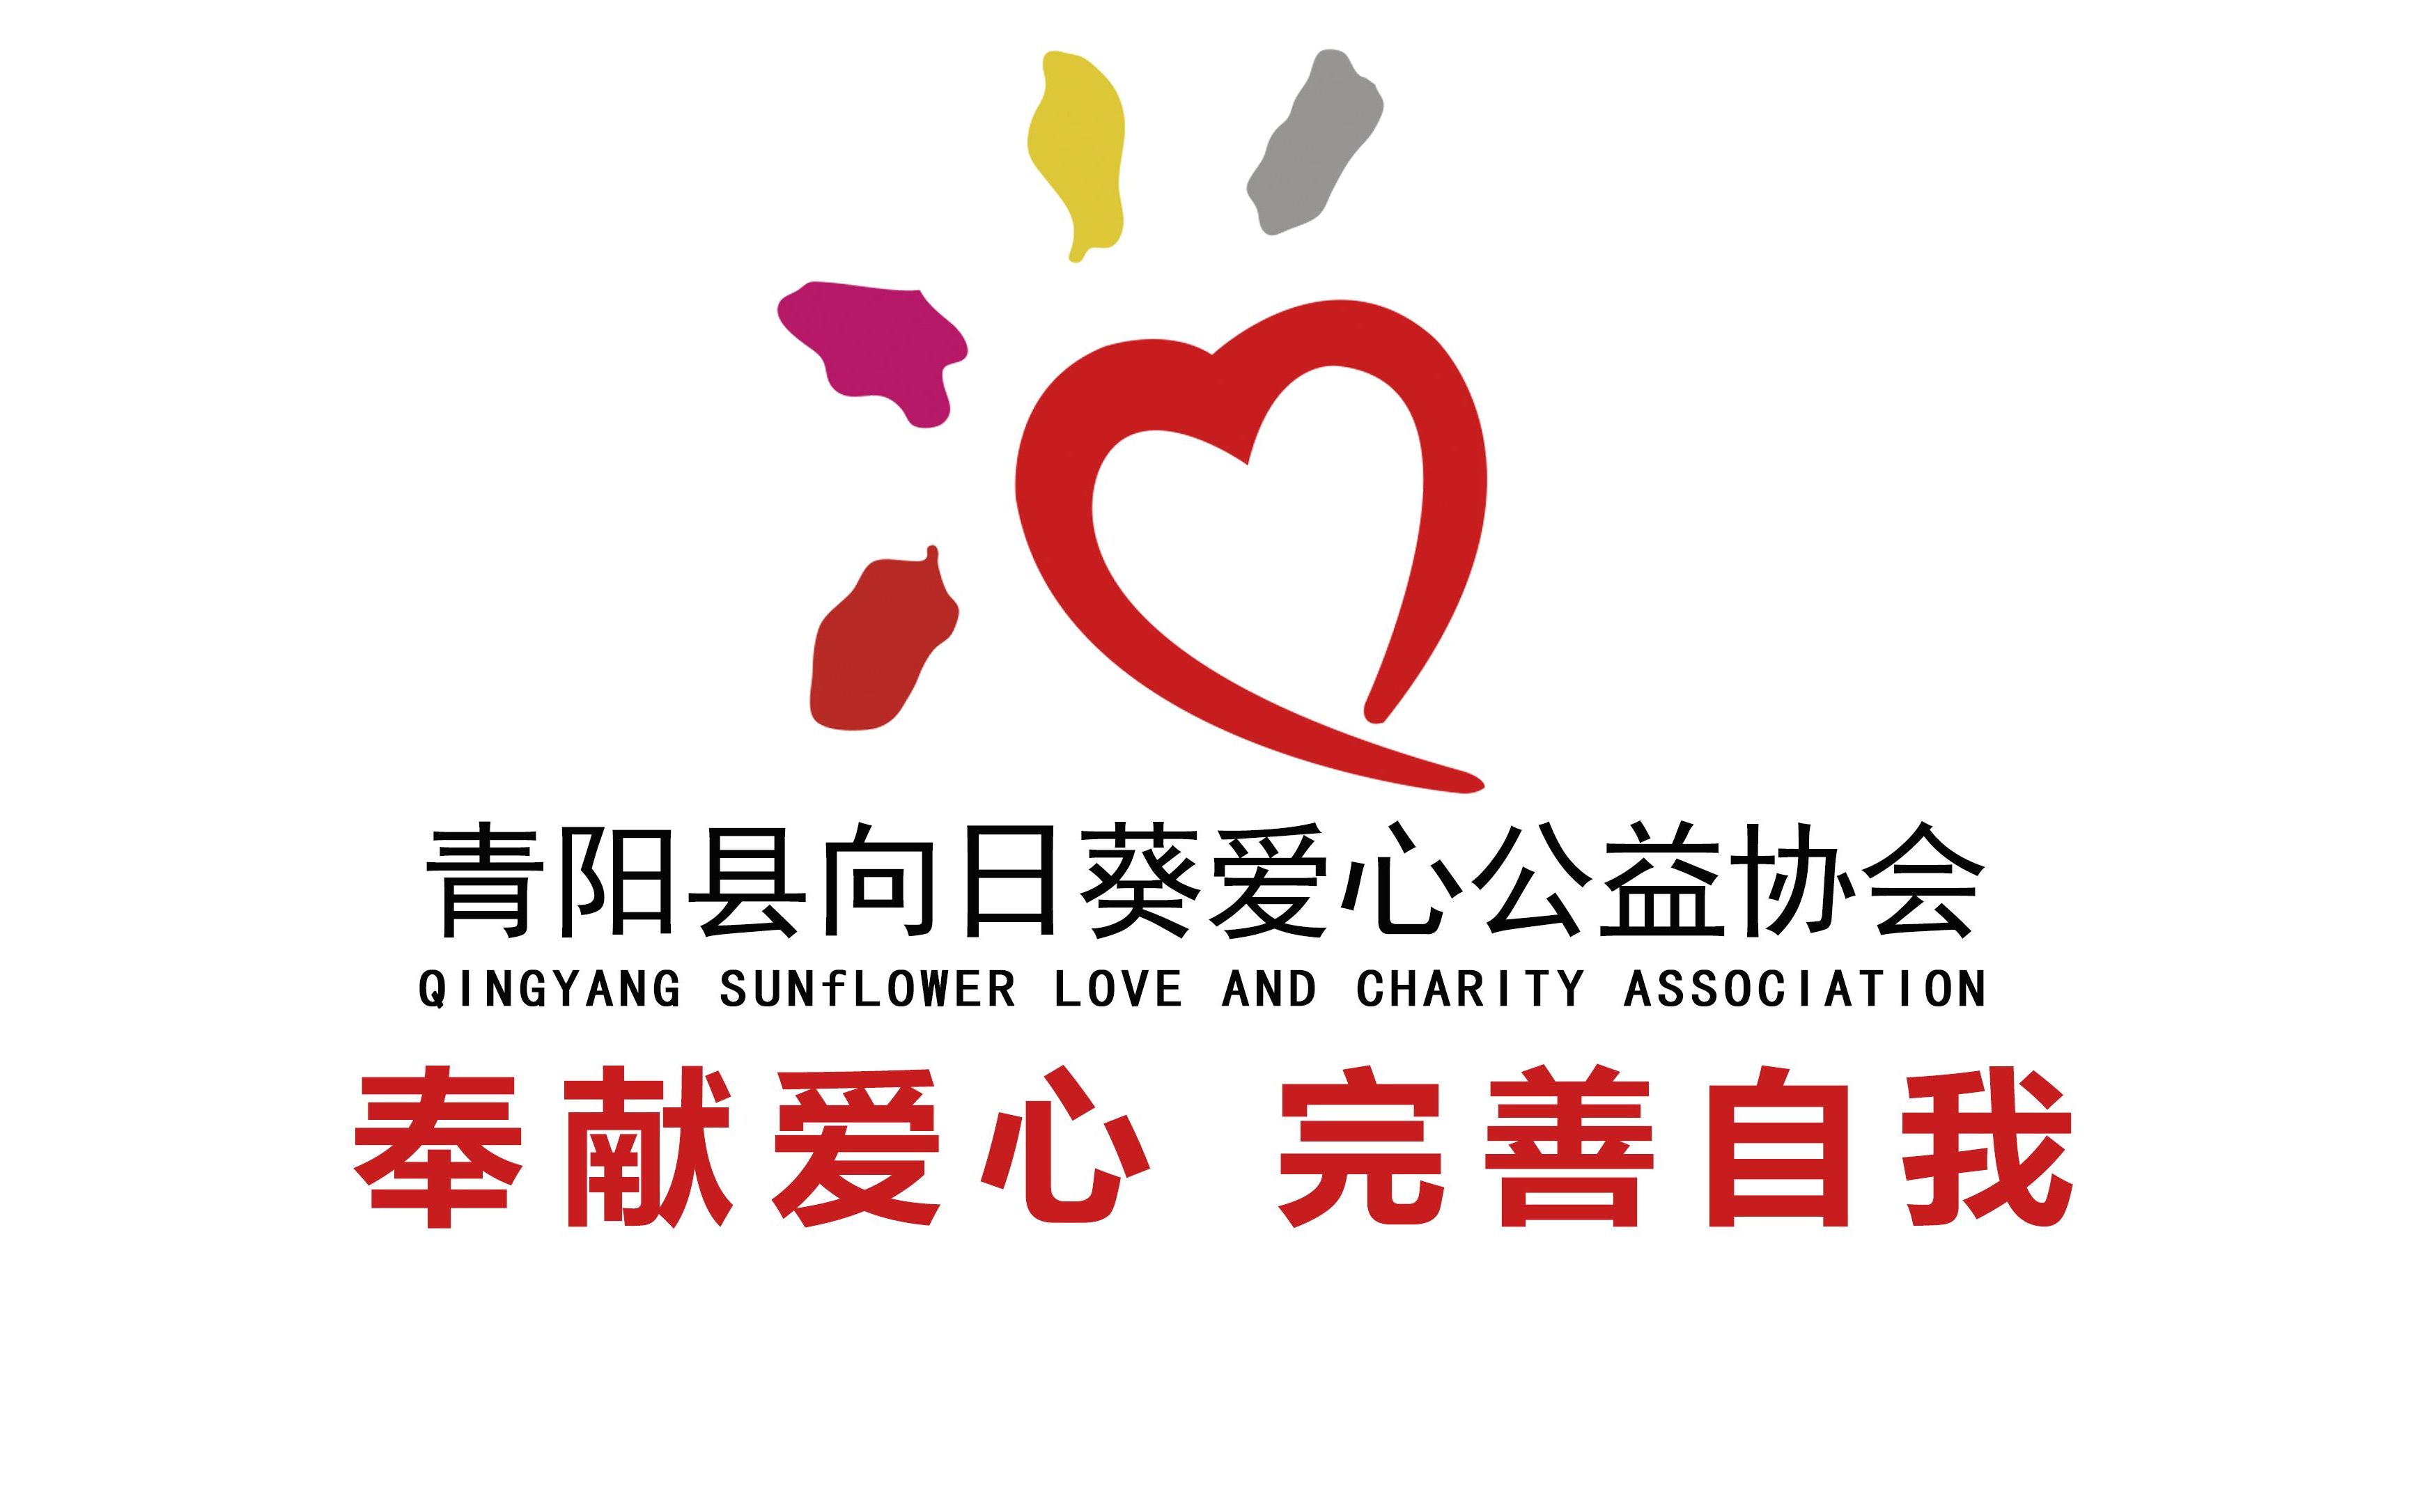 青阳县向日葵爱心公益协会四周年共公益成长